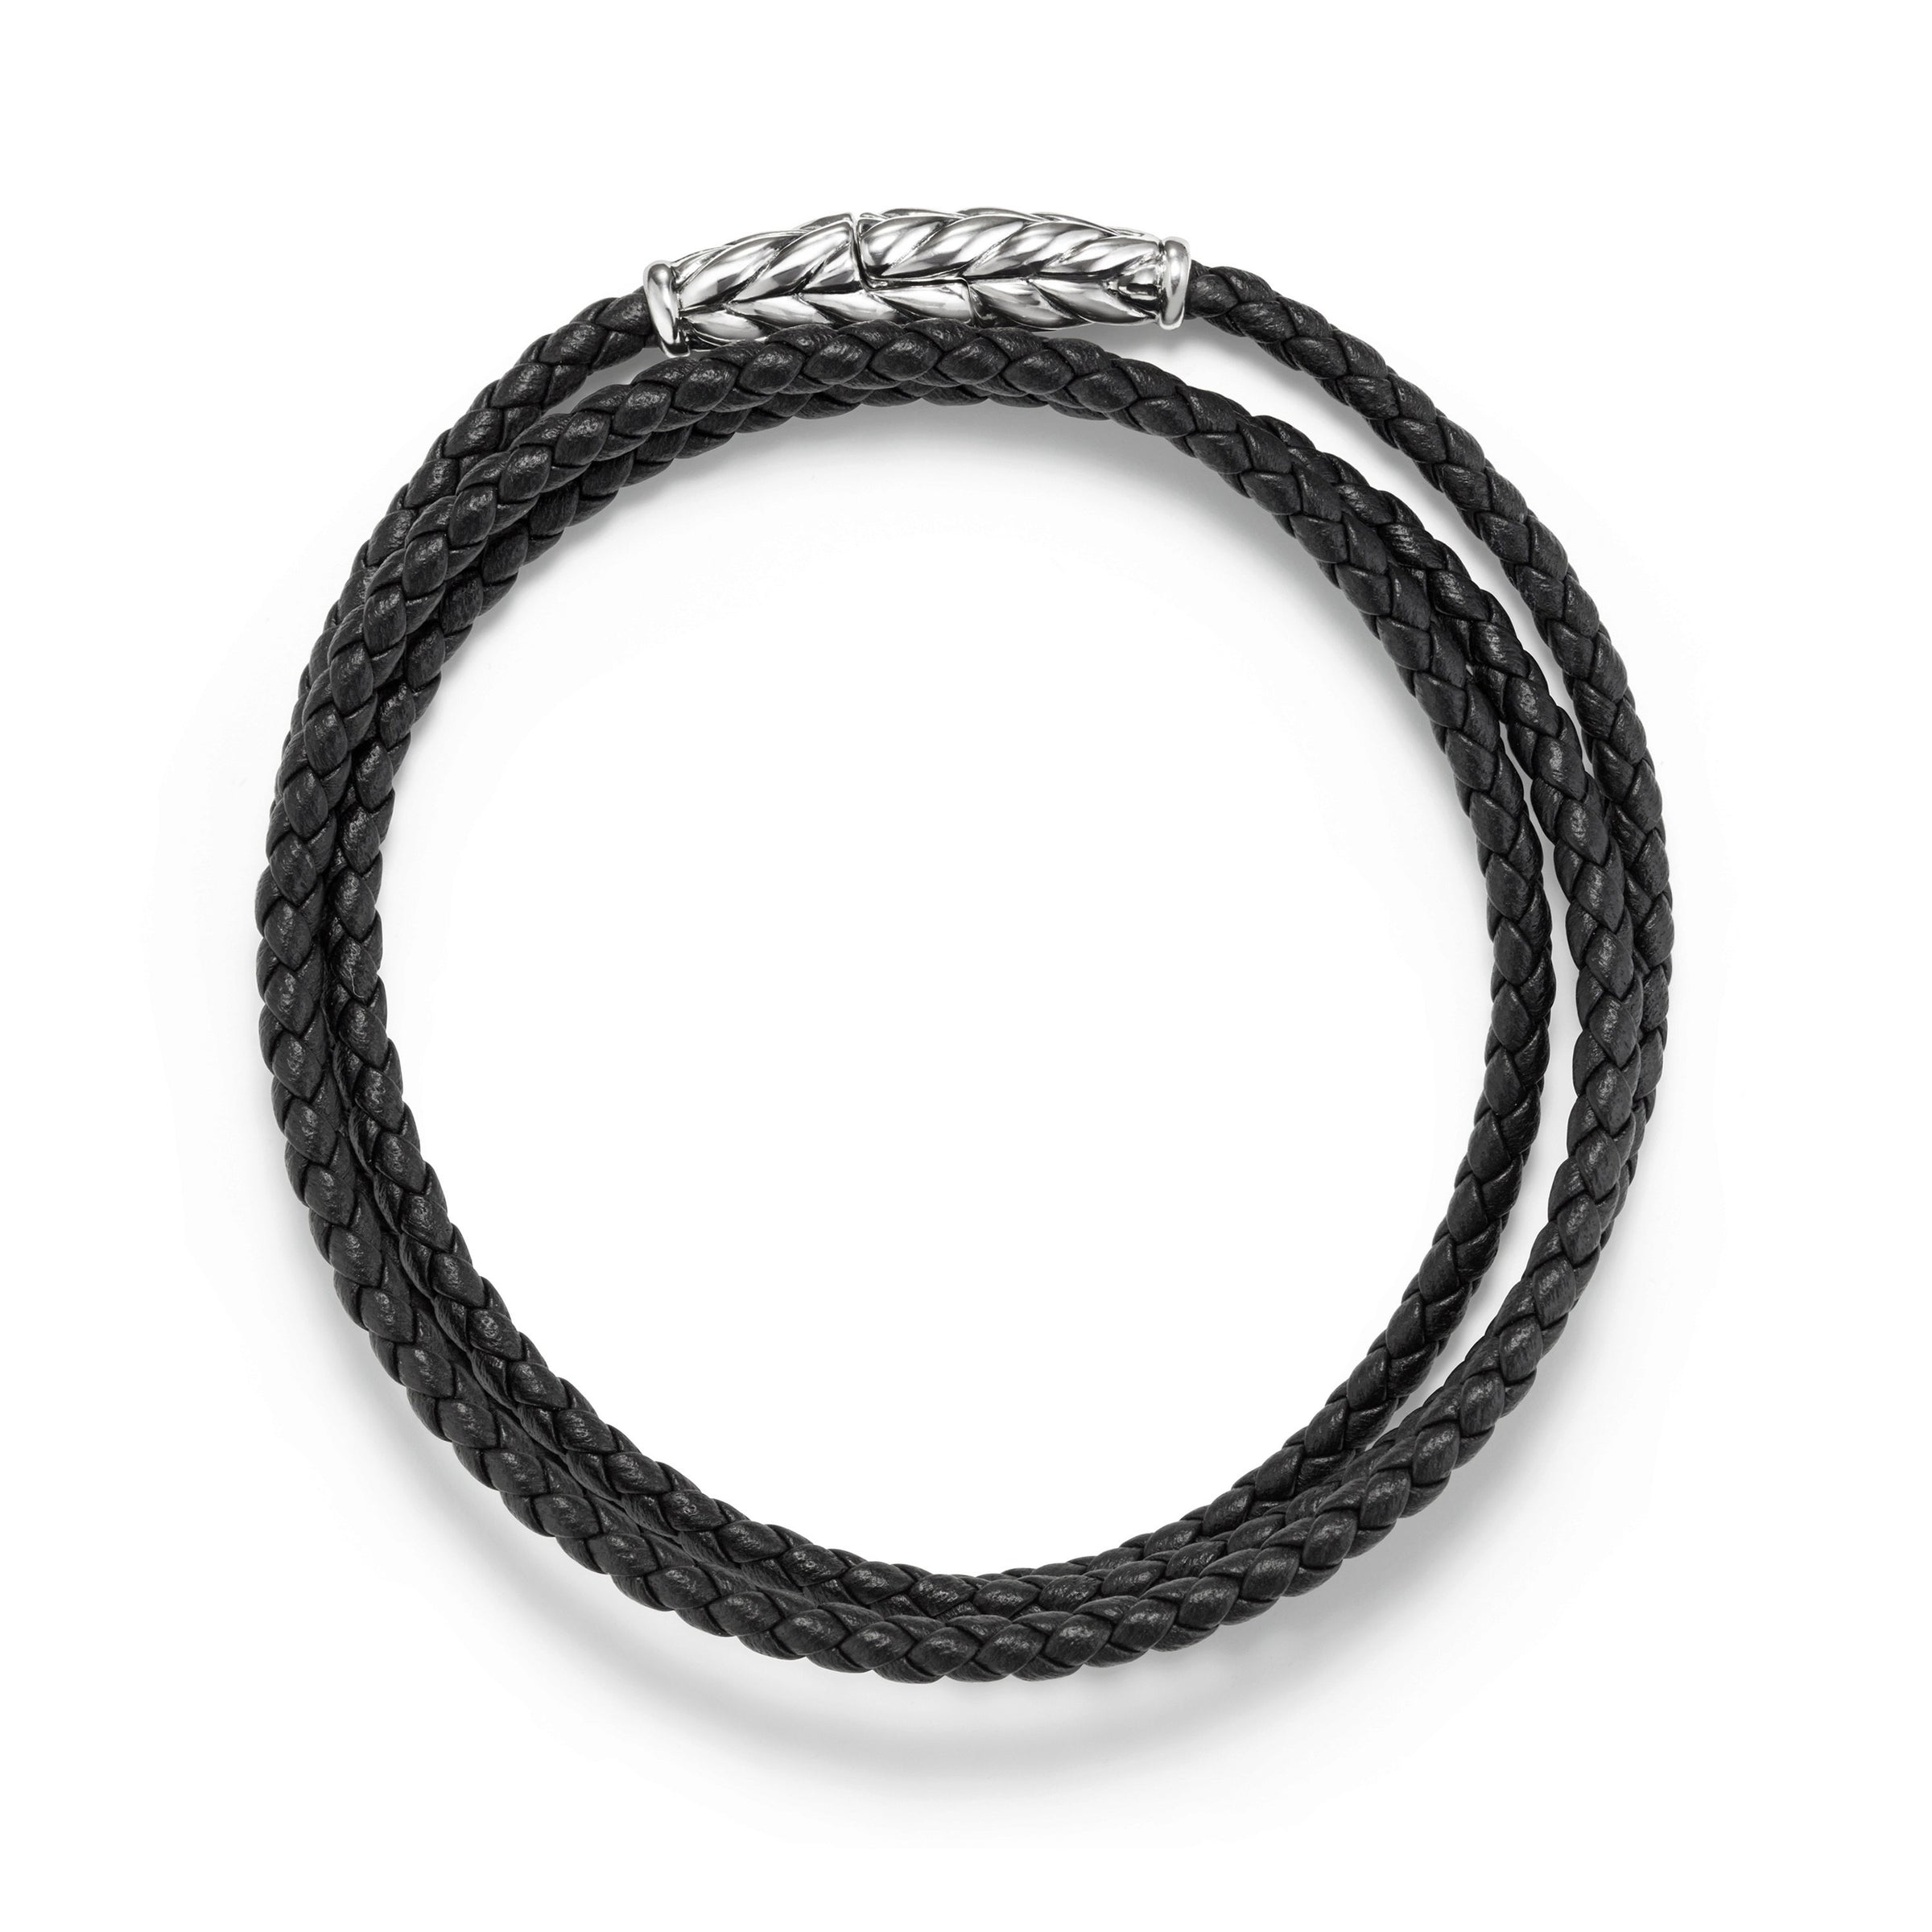 David Yurman Men's Chevron Triple-Wrap Bracelet